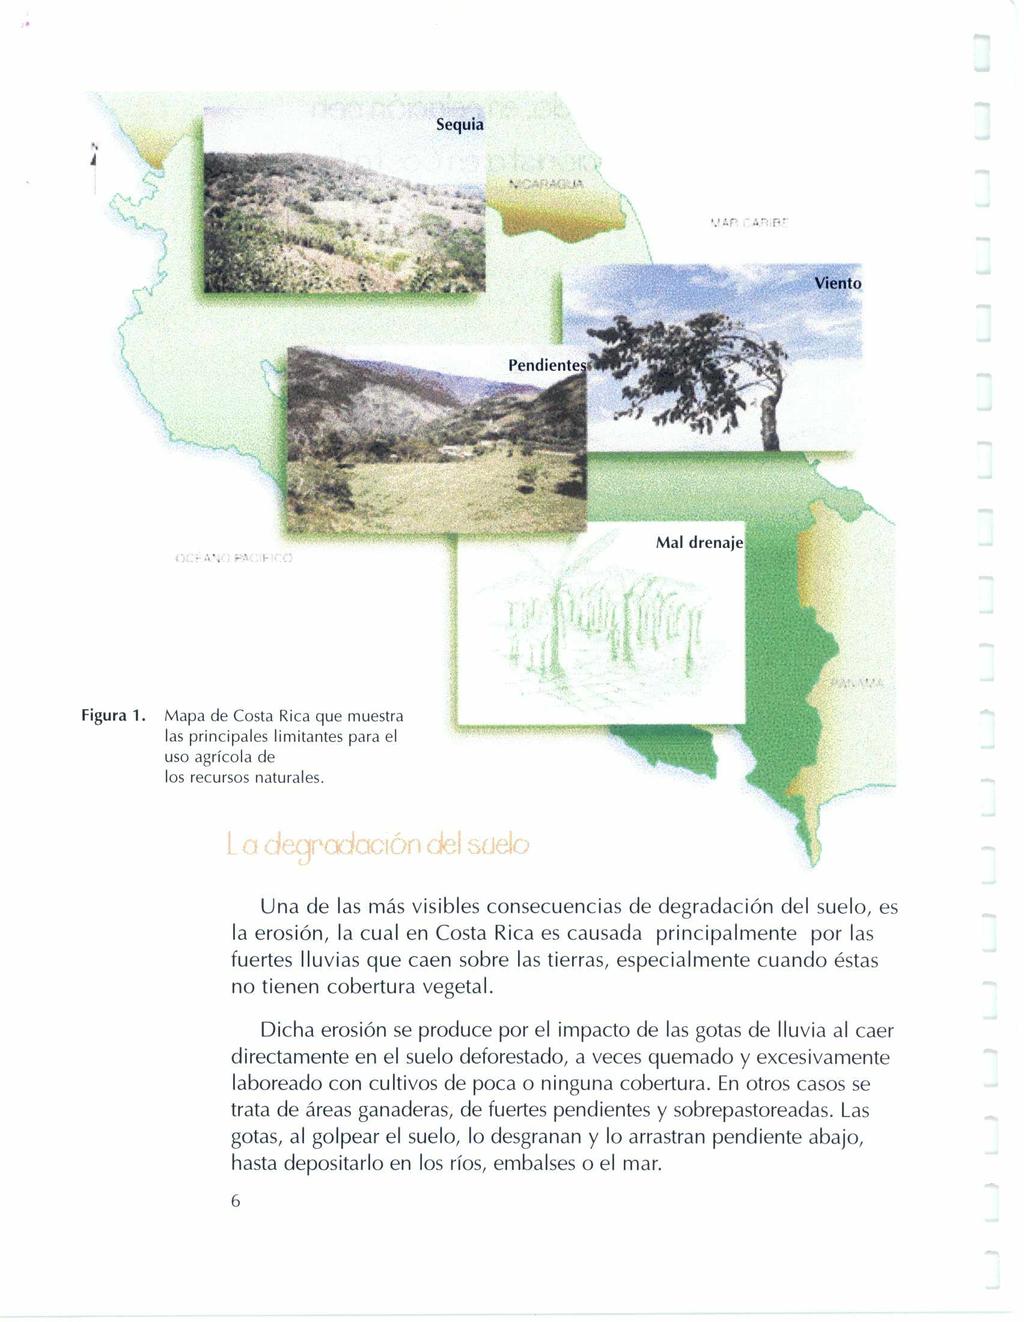 Sequia Á Mal drenaje Figura 1. Mapa de Costa Rica que muestra las principales limitantes para el uso agrícola de los recursos naturales.